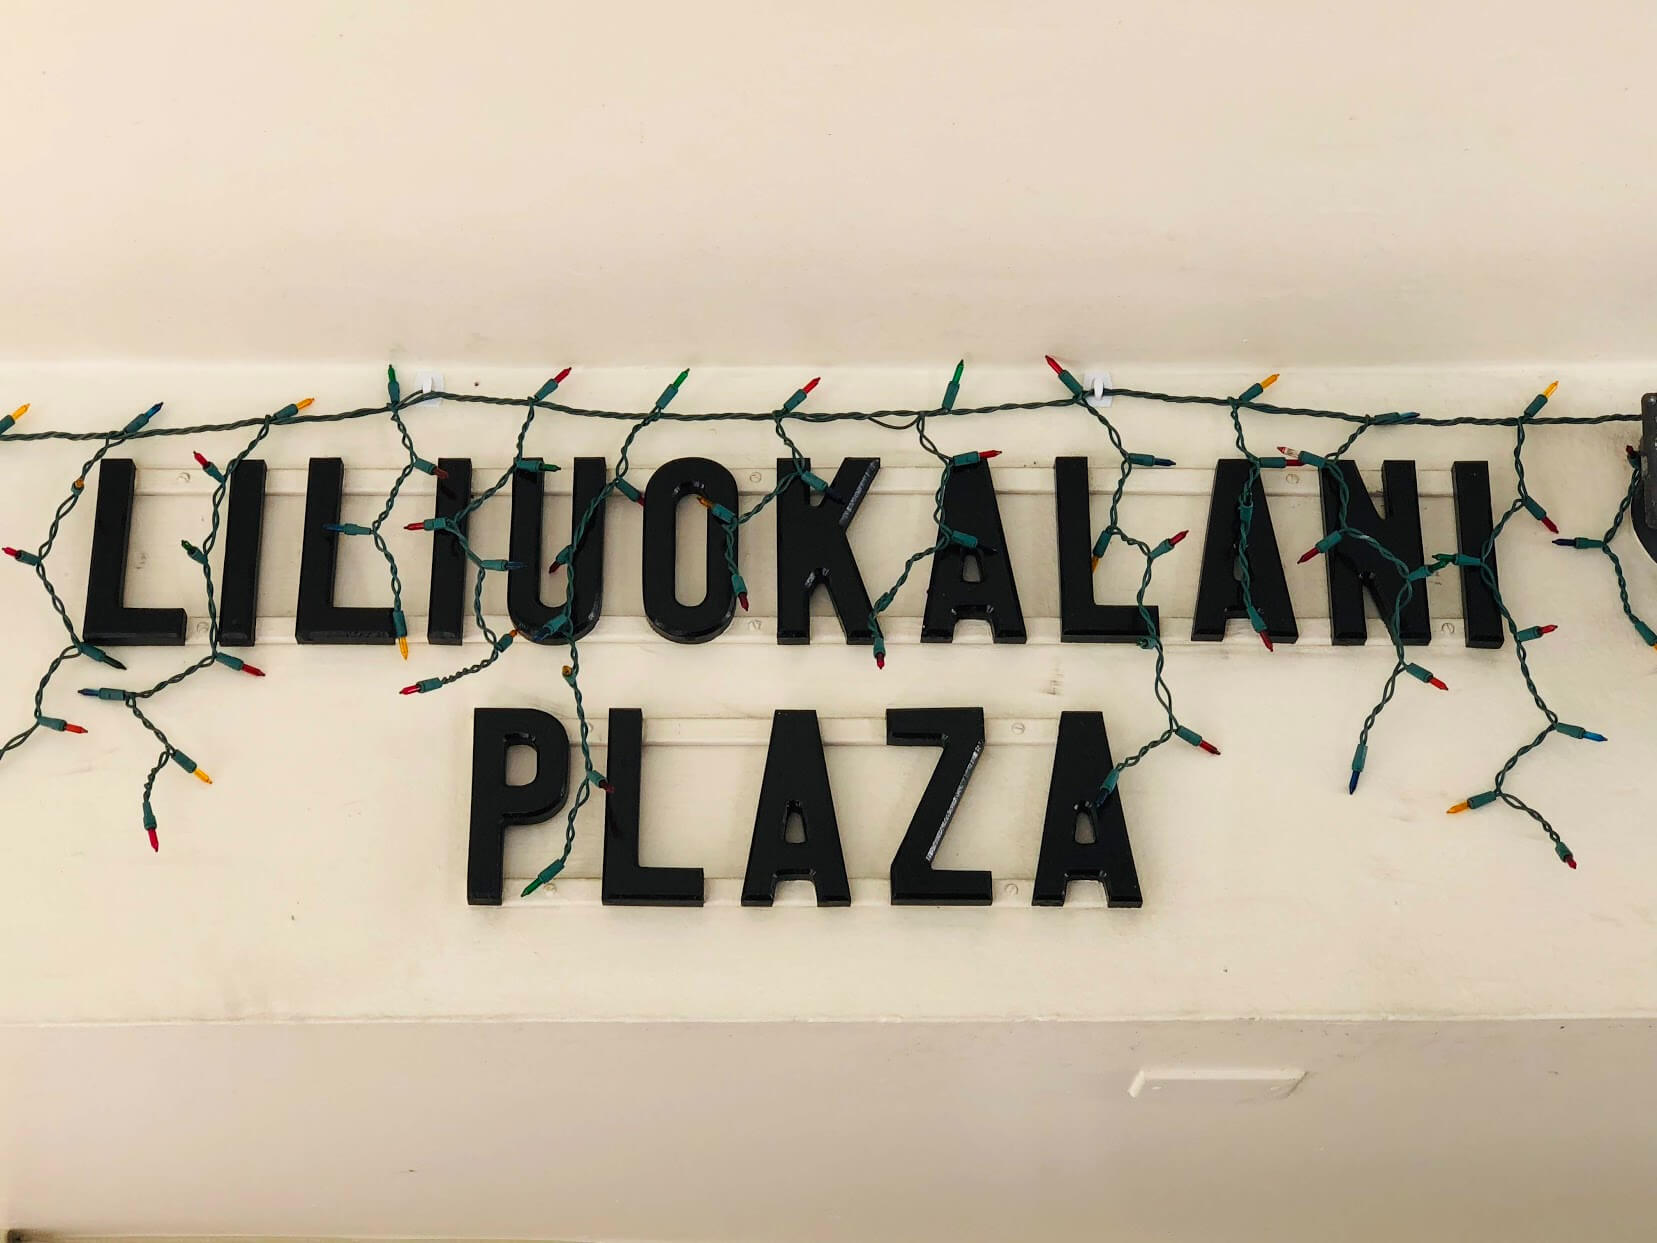 Liliuokalani Plazaの看板